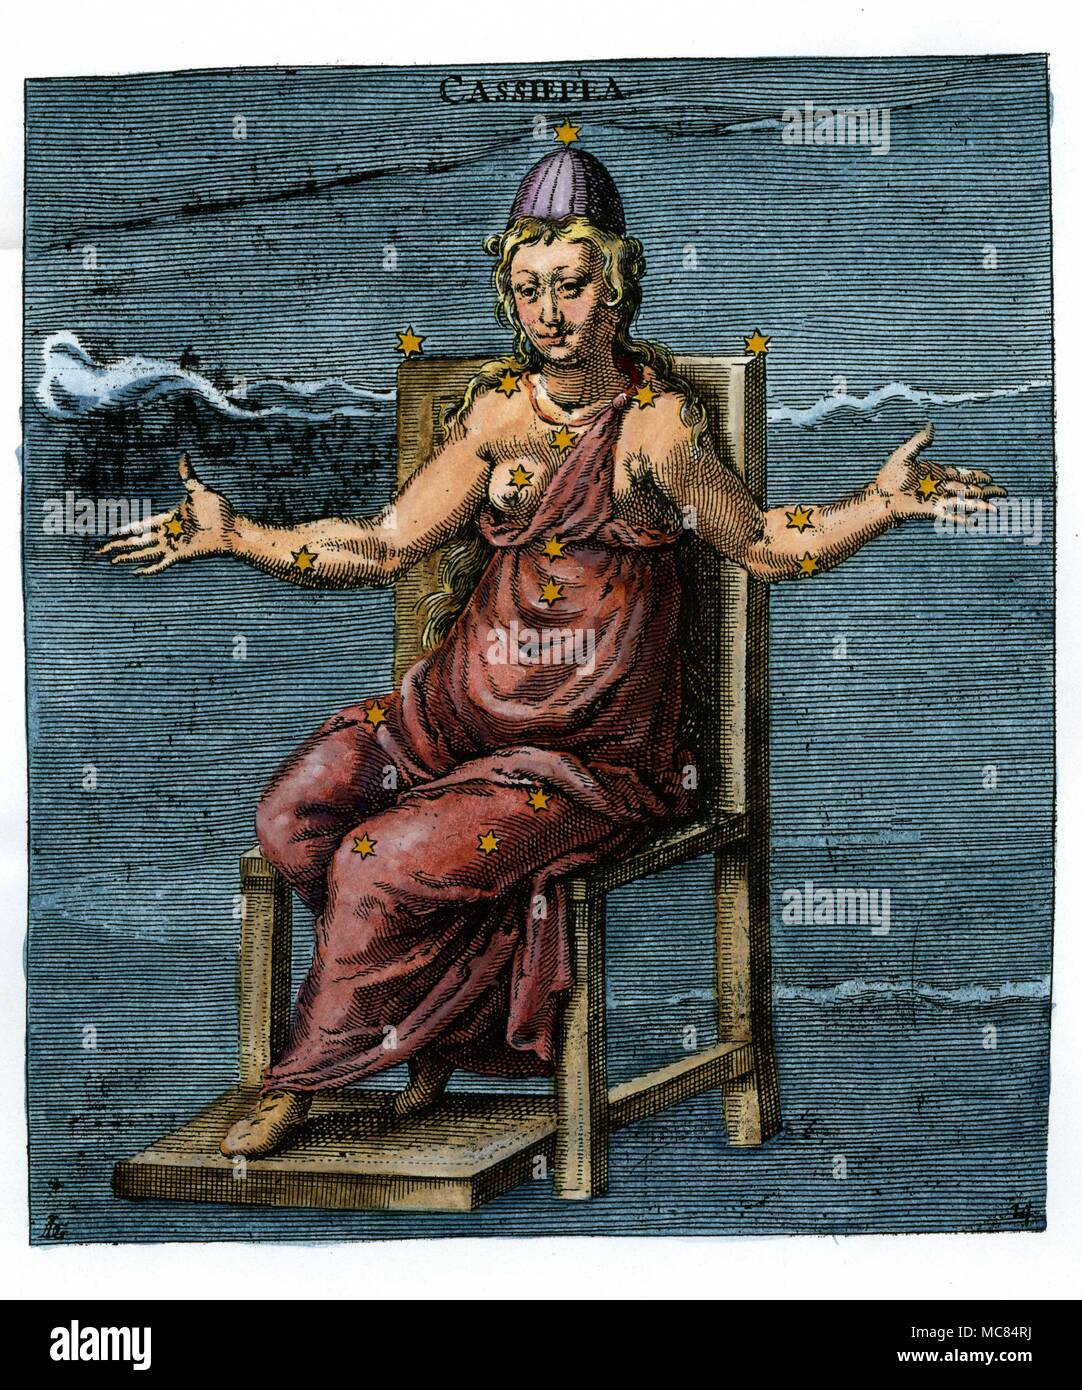 Cassiopeia, chi era [in greco legenda] la madre di Andromeda e moglie di  Cefeo. Xvii secolo colorate a mano l'incisione sulla base del nono secolo  arato illustrazioni di Leiden. Arato è nato